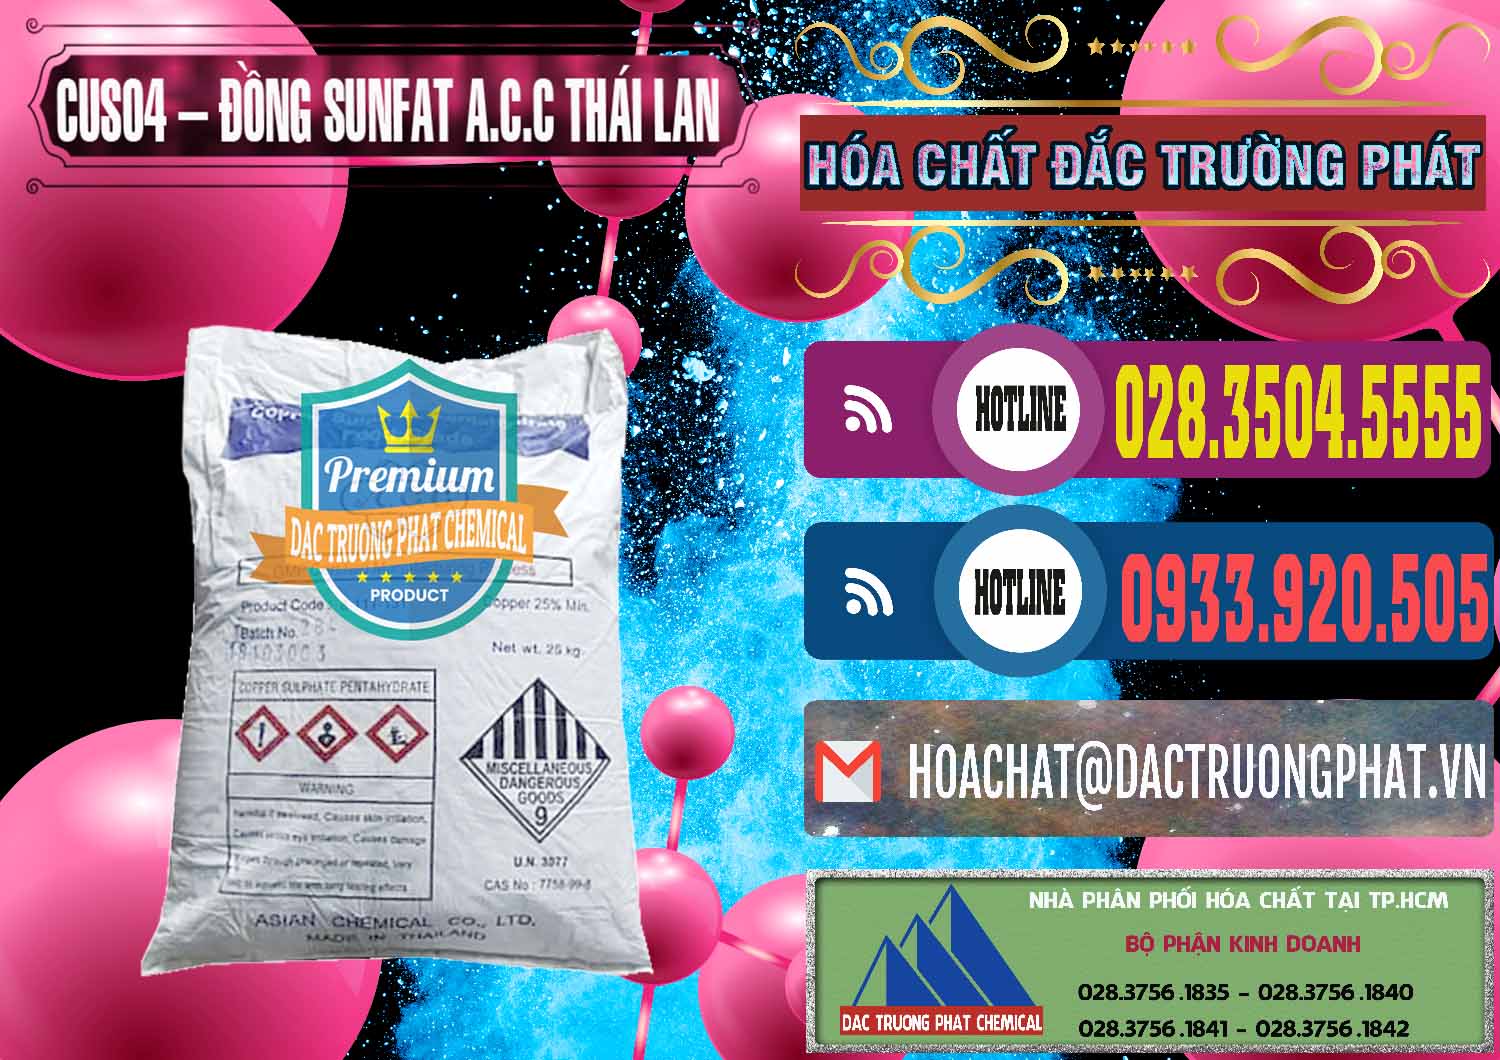 Đơn vị chuyên bán _ cung ứng CuSO4 – Đồng Sunfat A.C.C Thái Lan - 0249 - Cty cung cấp & bán hóa chất tại TP.HCM - muabanhoachat.com.vn